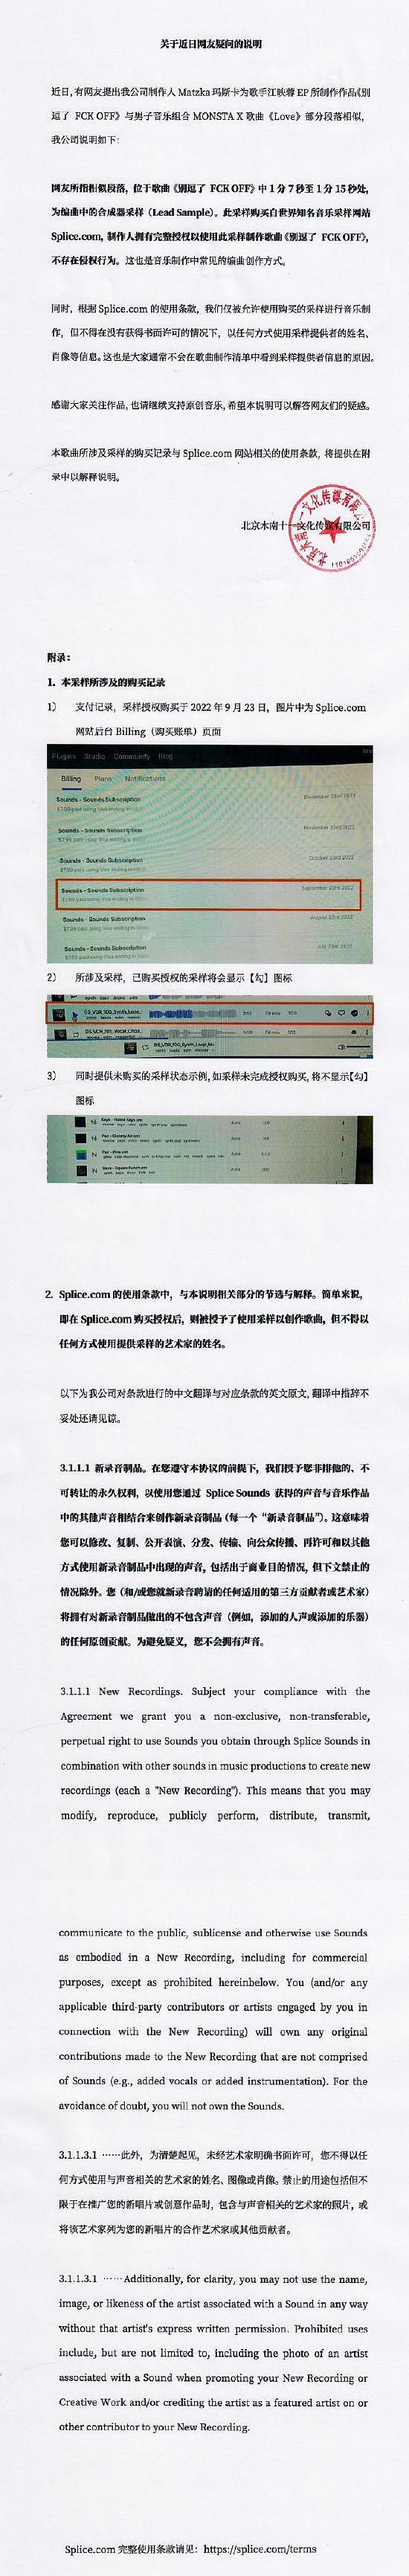 江映蓉方否认新歌抄袭 称是网站购买的版权采样 - 1